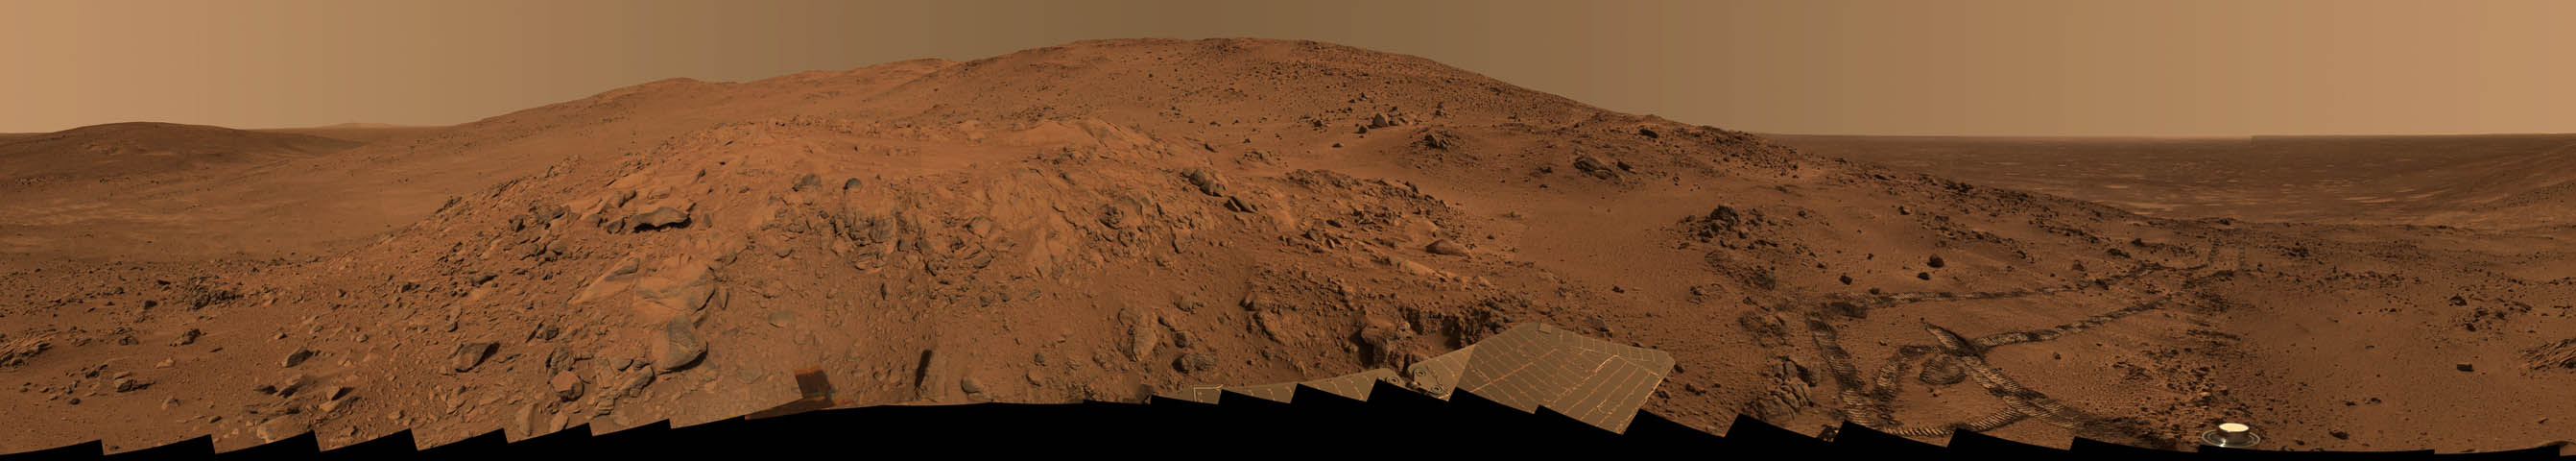 Un Panorama de Marte desde el Mirador de Larry